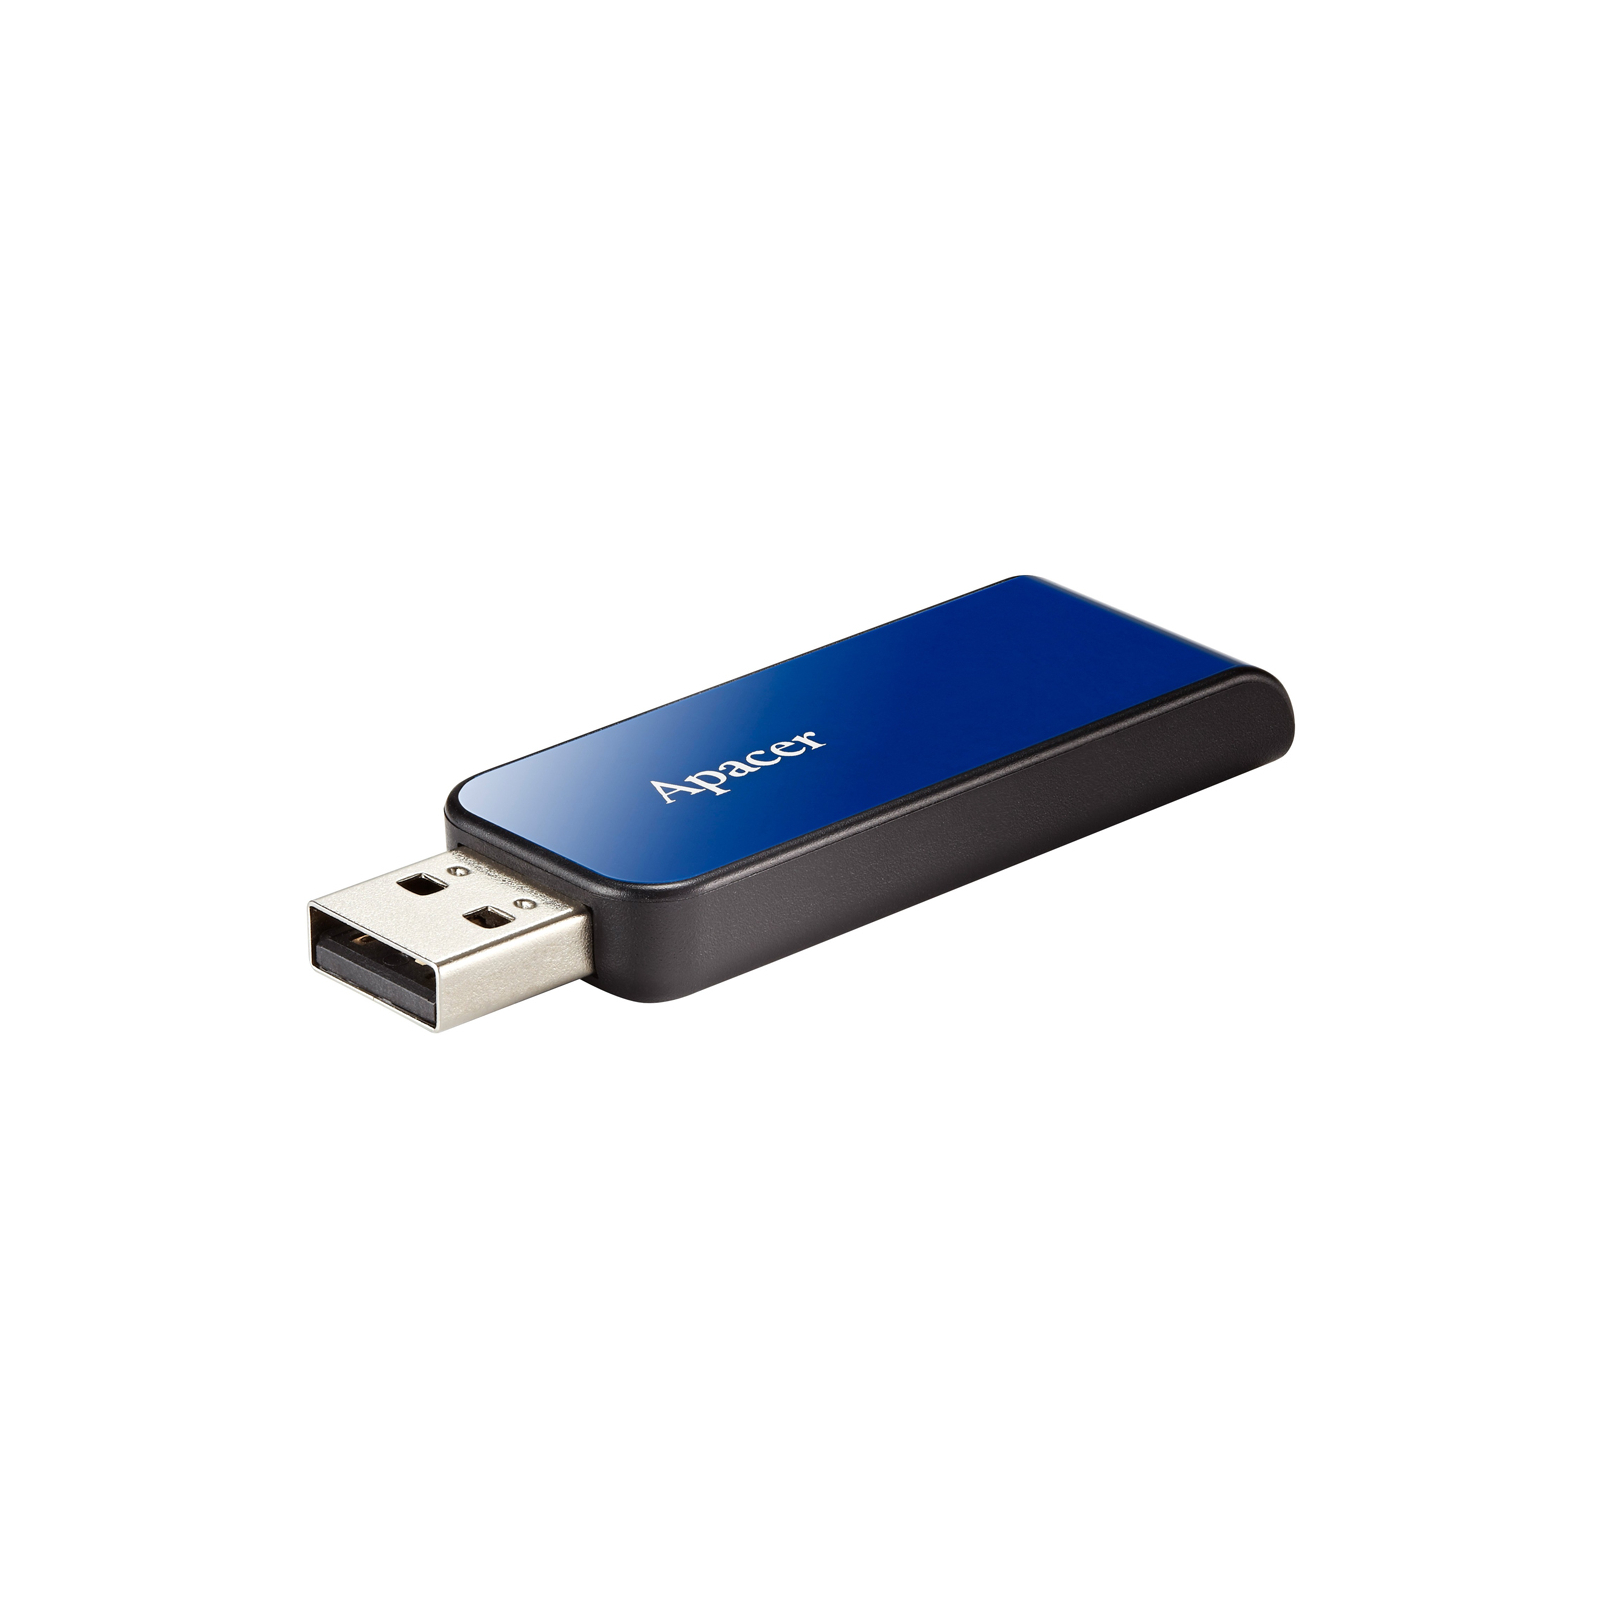 USB флеш накопичувач Apacer 16GB AH334 pink USB 2.0 (AP16GAH334P-1) зображення 3